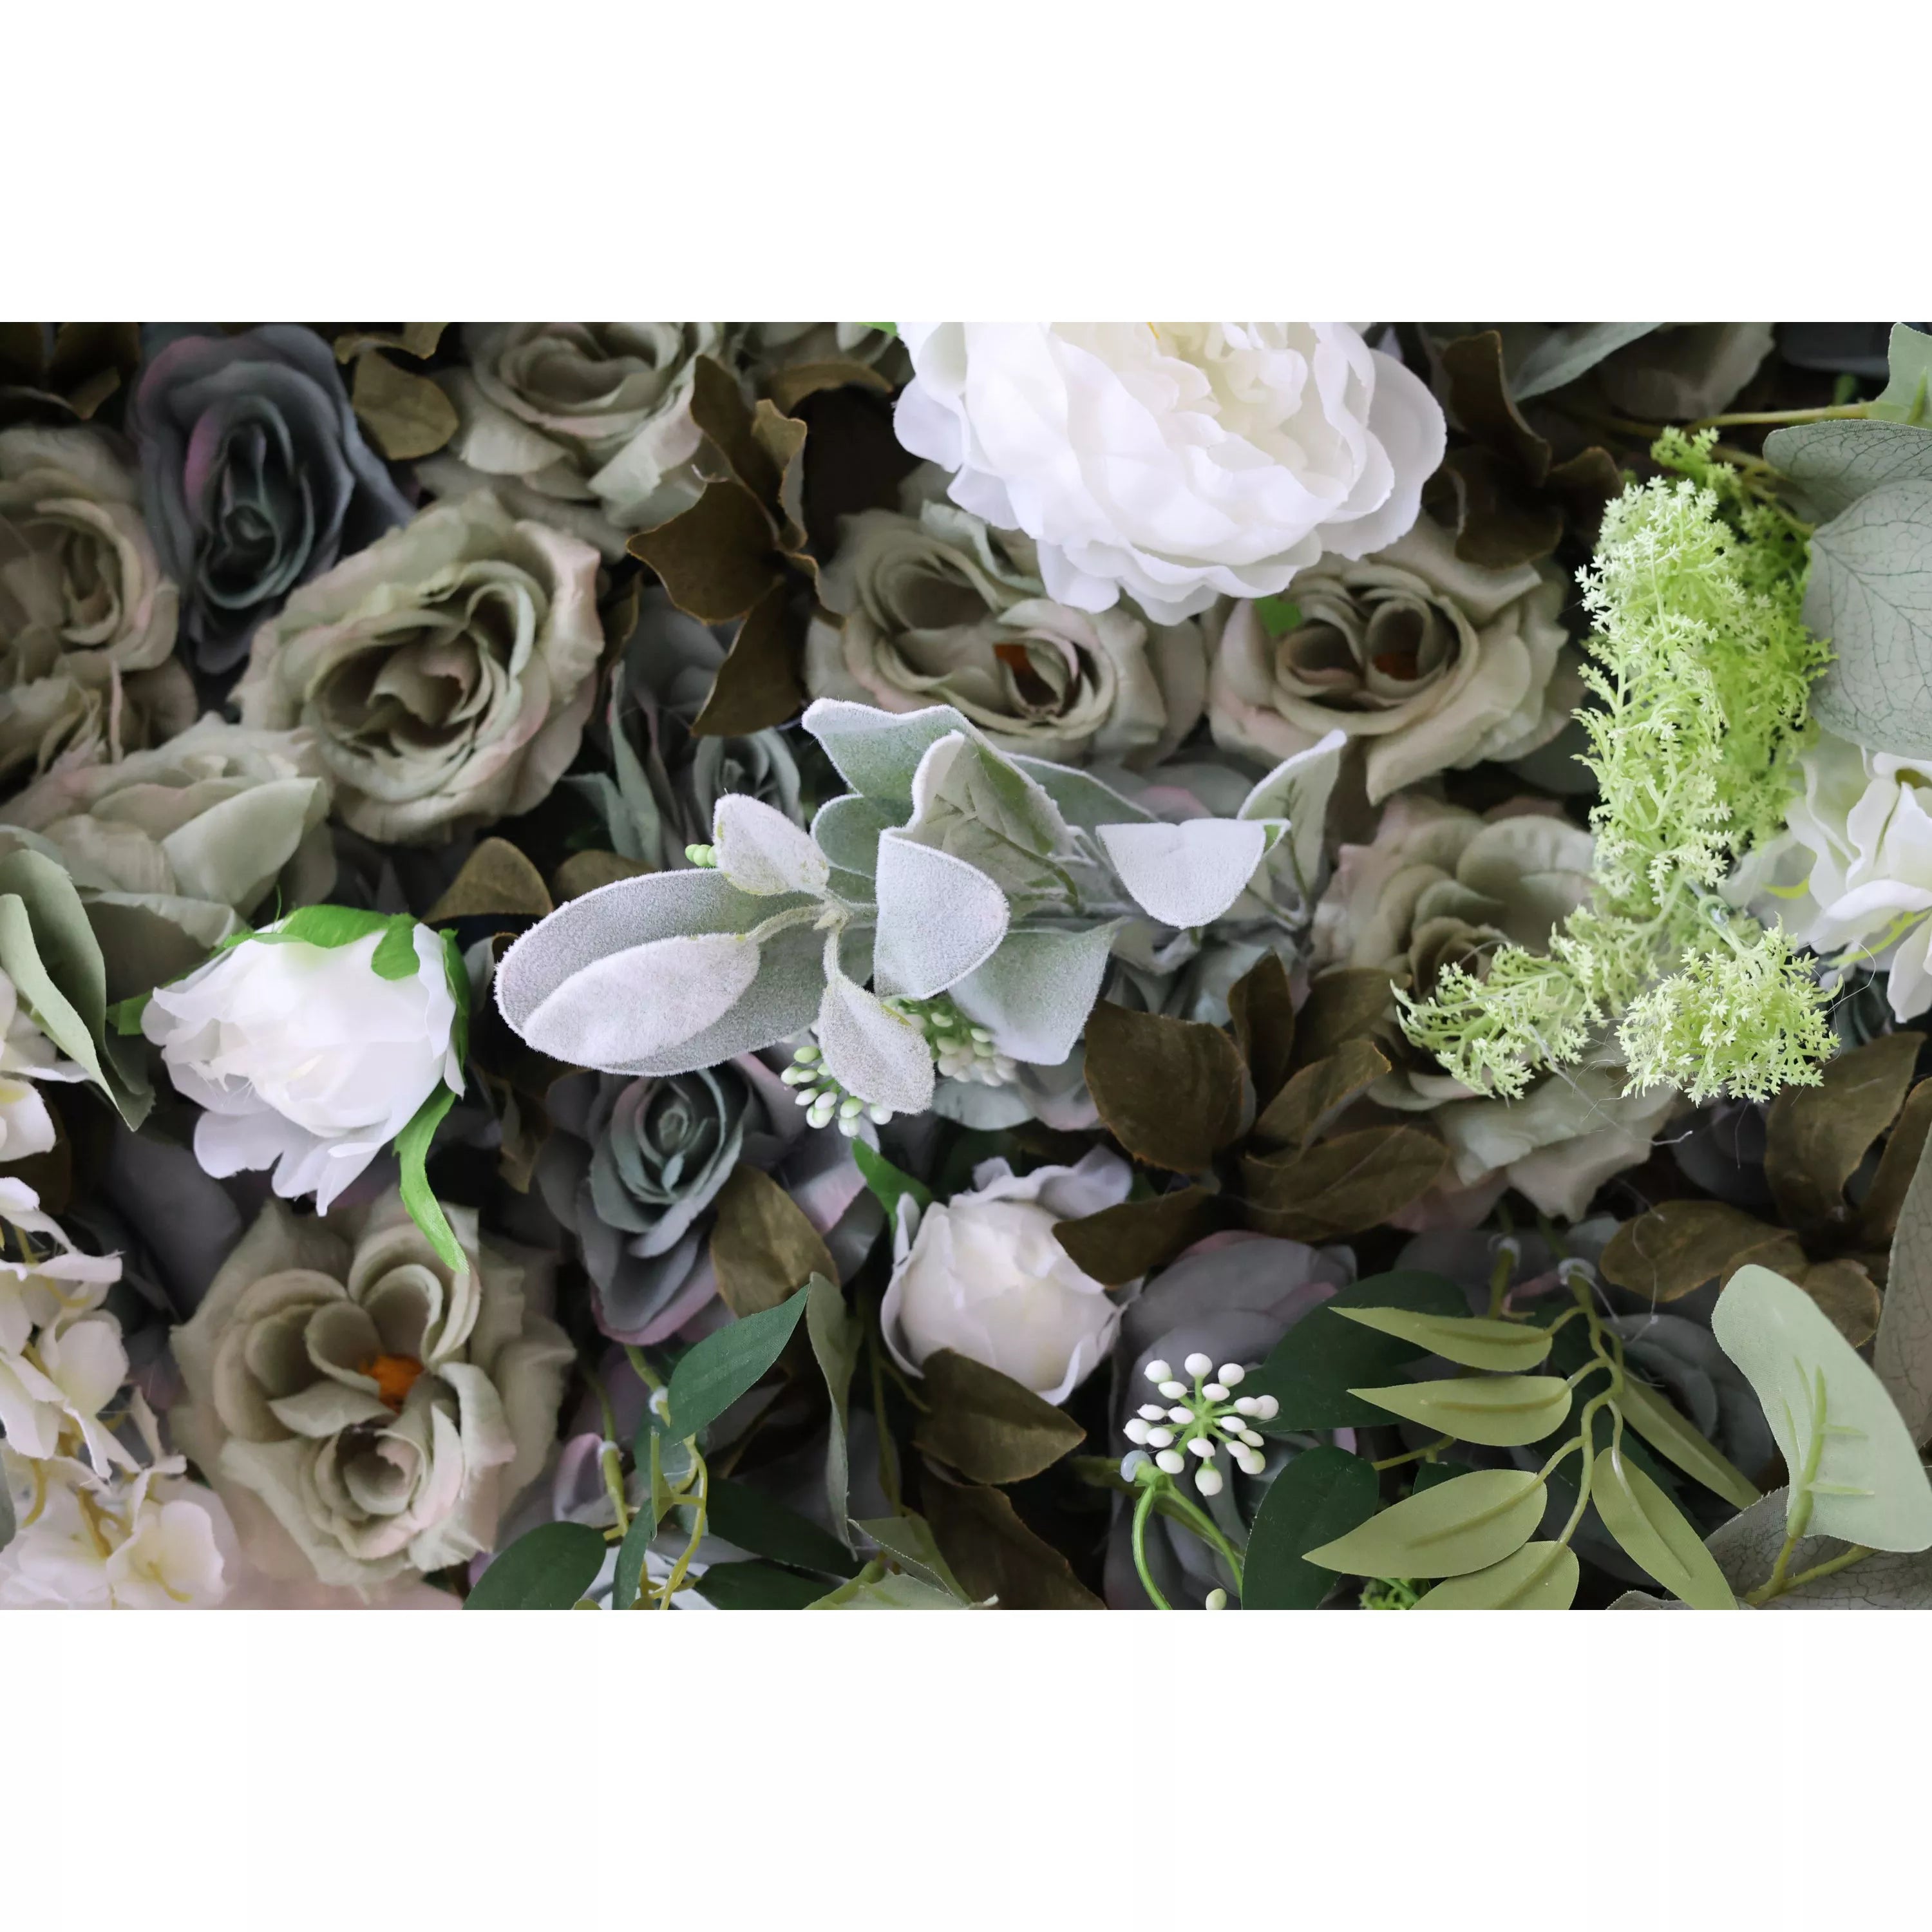 زهور فالار تقدم: إليزيوم أخضر-مزيج خصب من أوراق الشجر الخضراء والأزهار البيضاء المتتالية-الجدار المثالي المستوحى من الطبيعة لحفلات الحدائق ، والأحداث ذات الطابع البيئي والأخضر